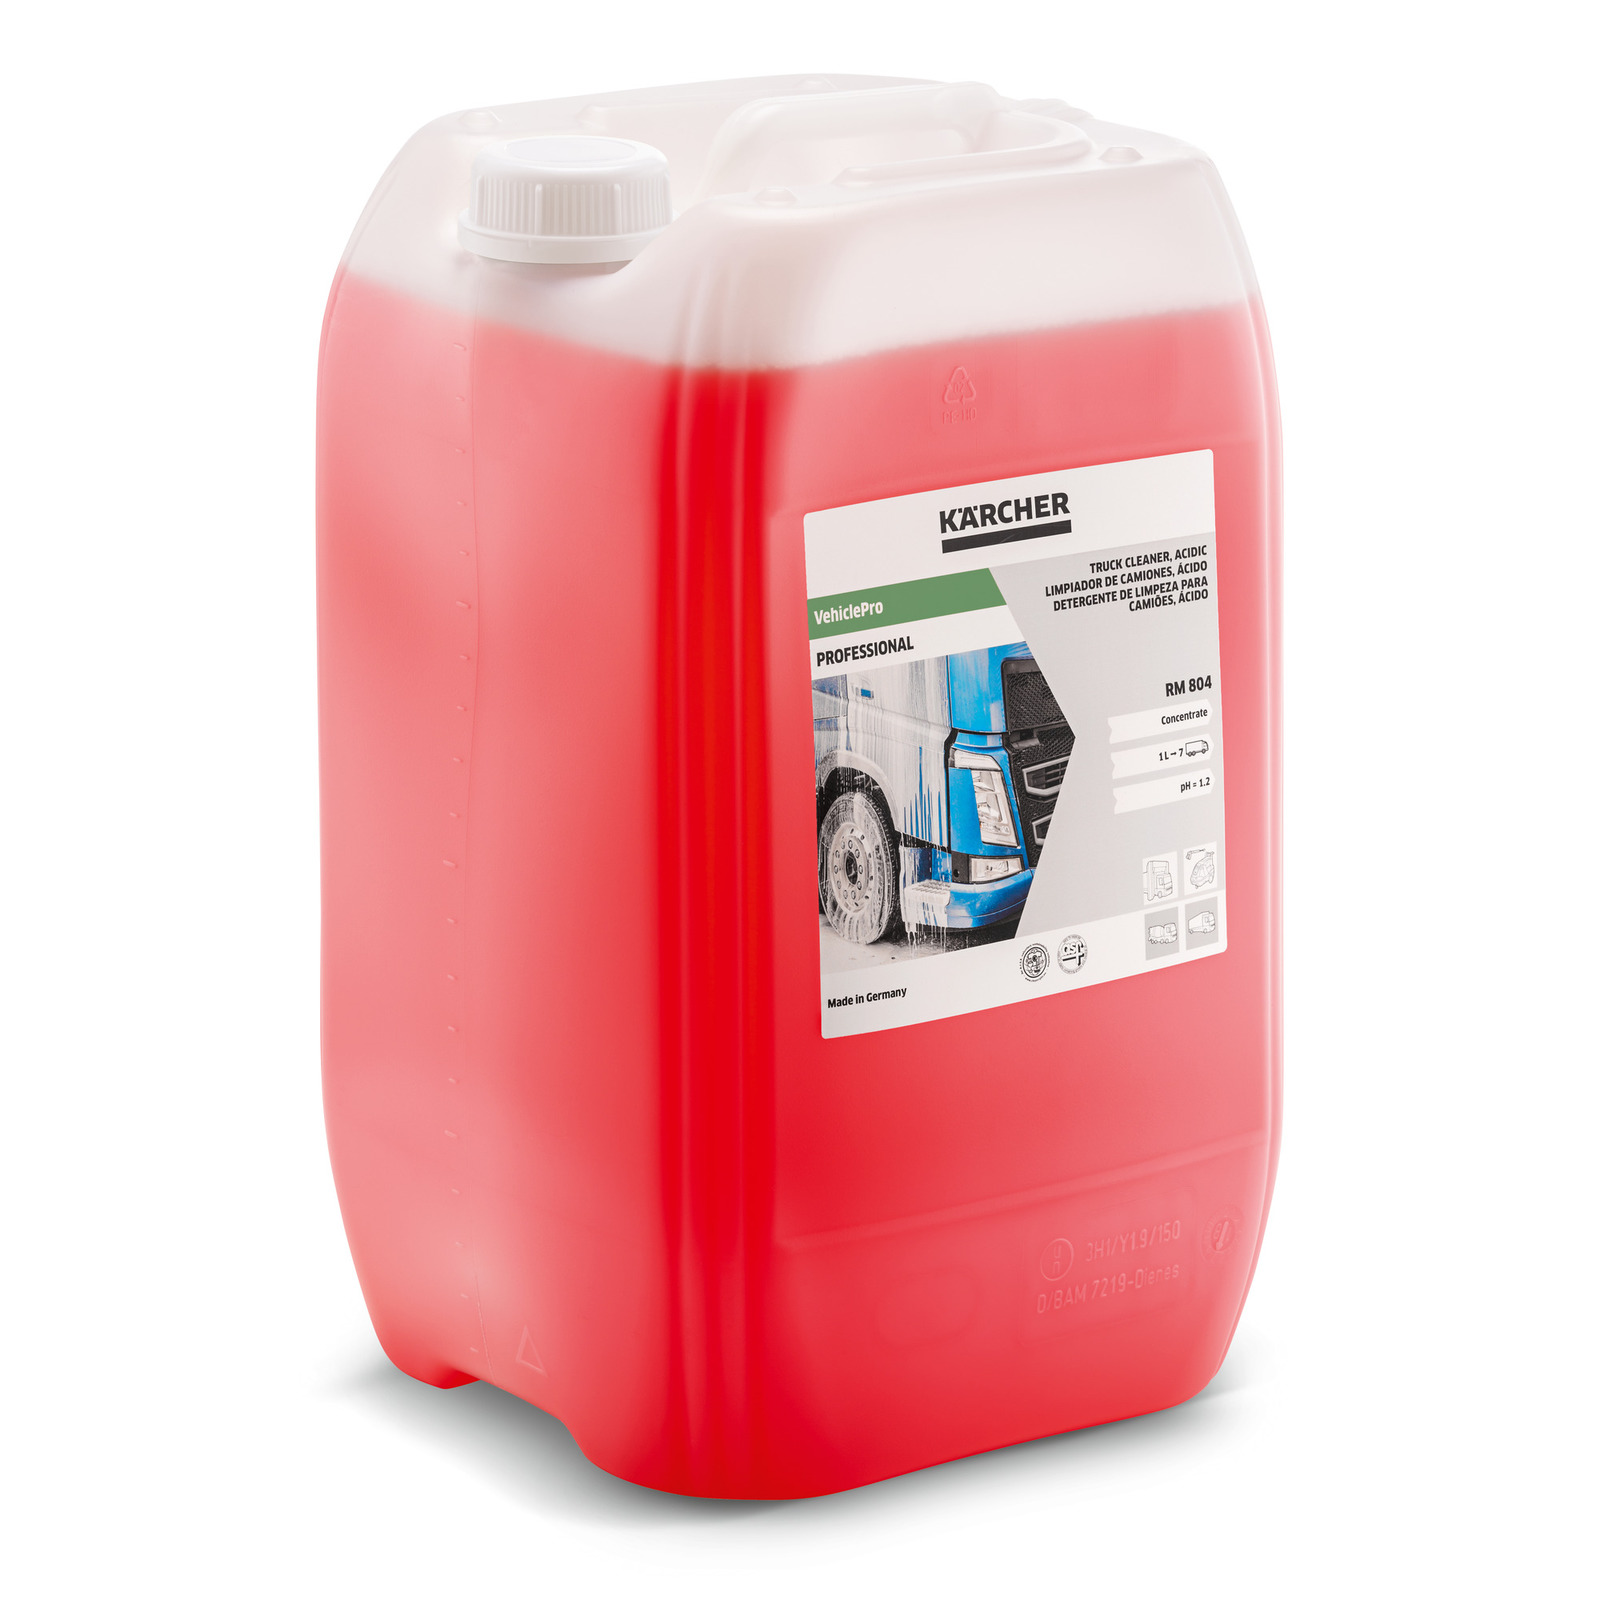 Rm 756 detergent pour autolaveuse br30/4c le bidon de 1l - karcher KARCHER  Pas Cher 